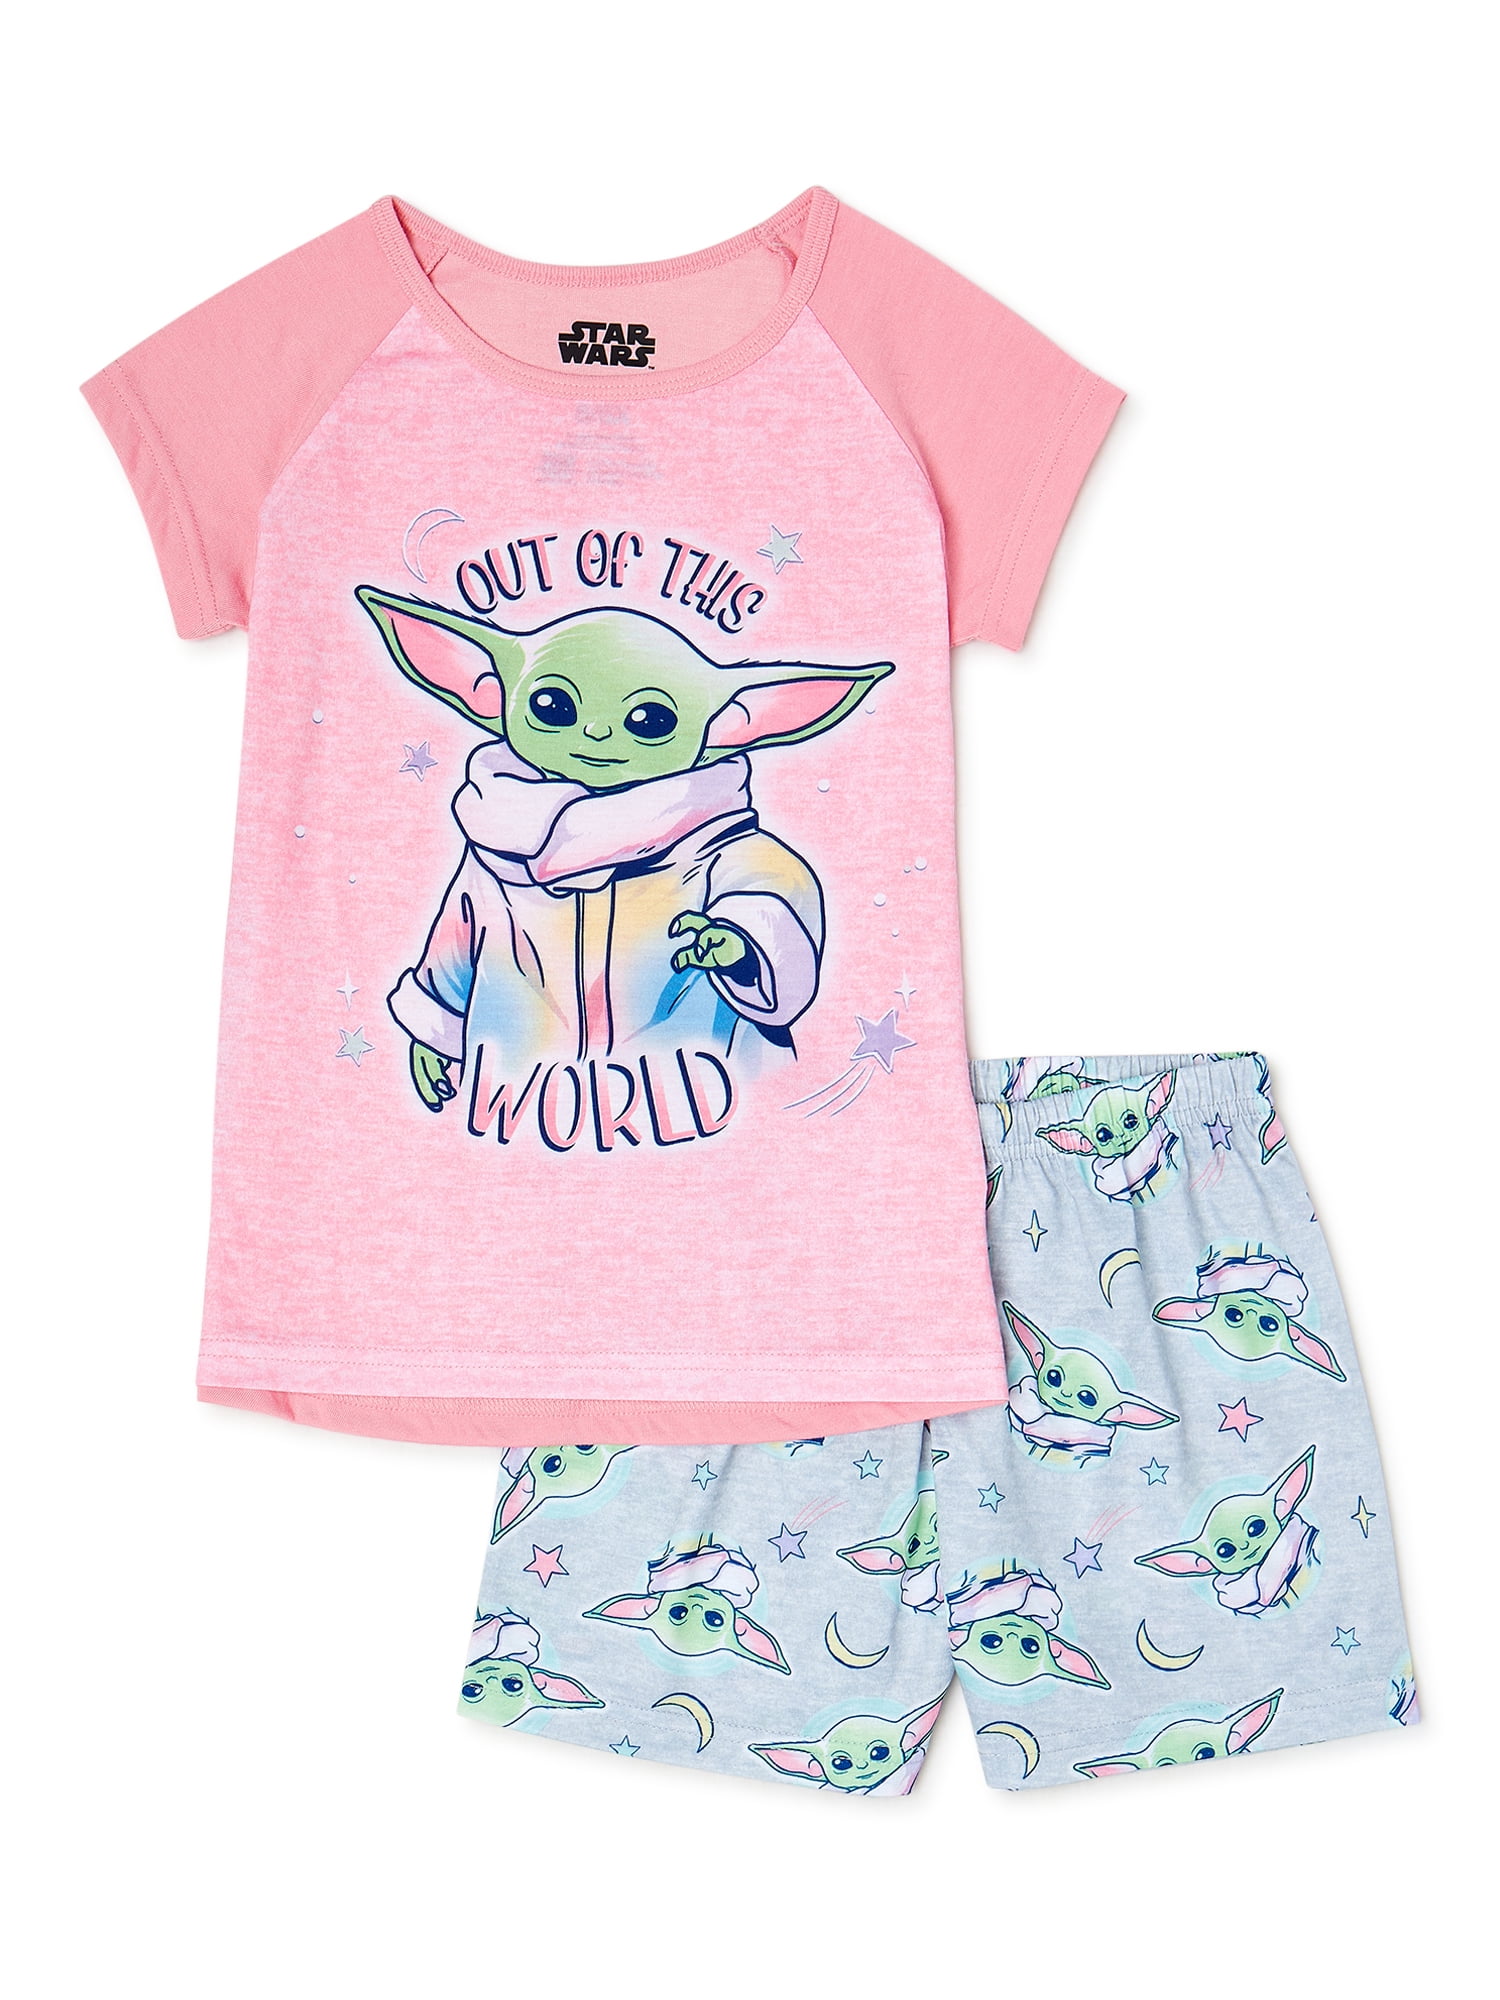 LEGO Star Wars Baby Yoda 2 Piece Pajama Set Girls 4/5 to 10/12 